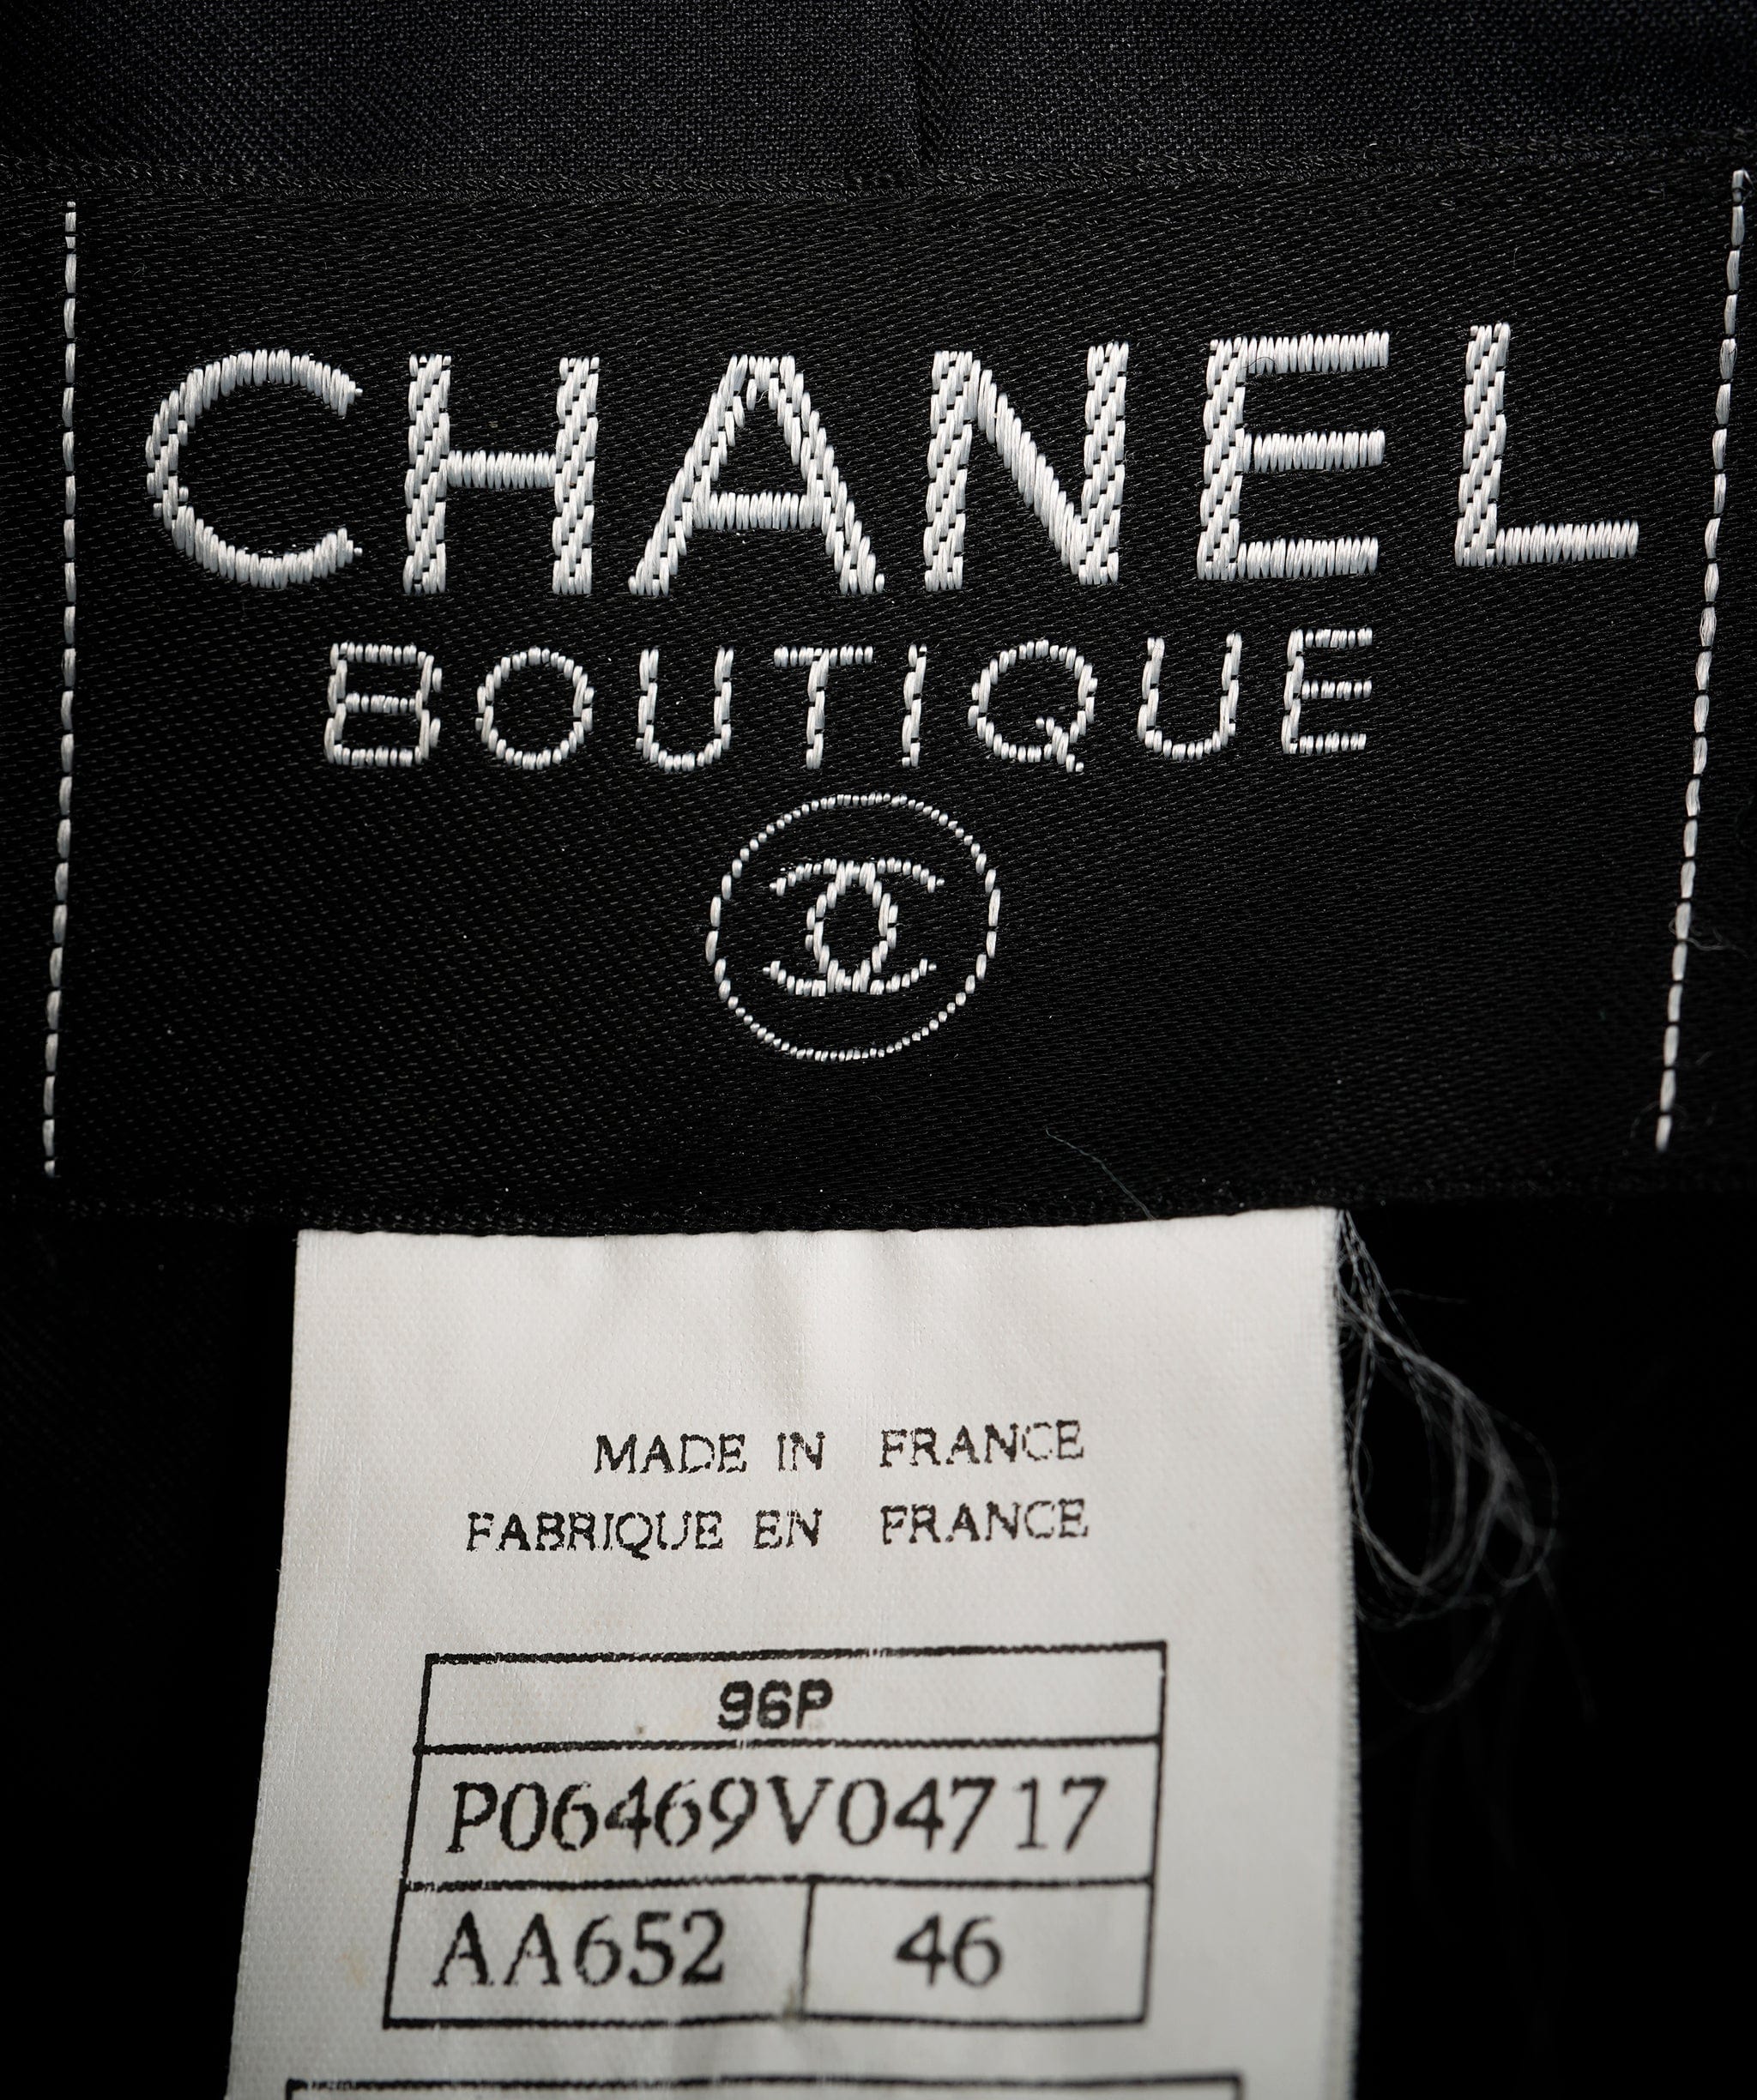 Chanel chanel stripe Blazer size 46 - AJC0672